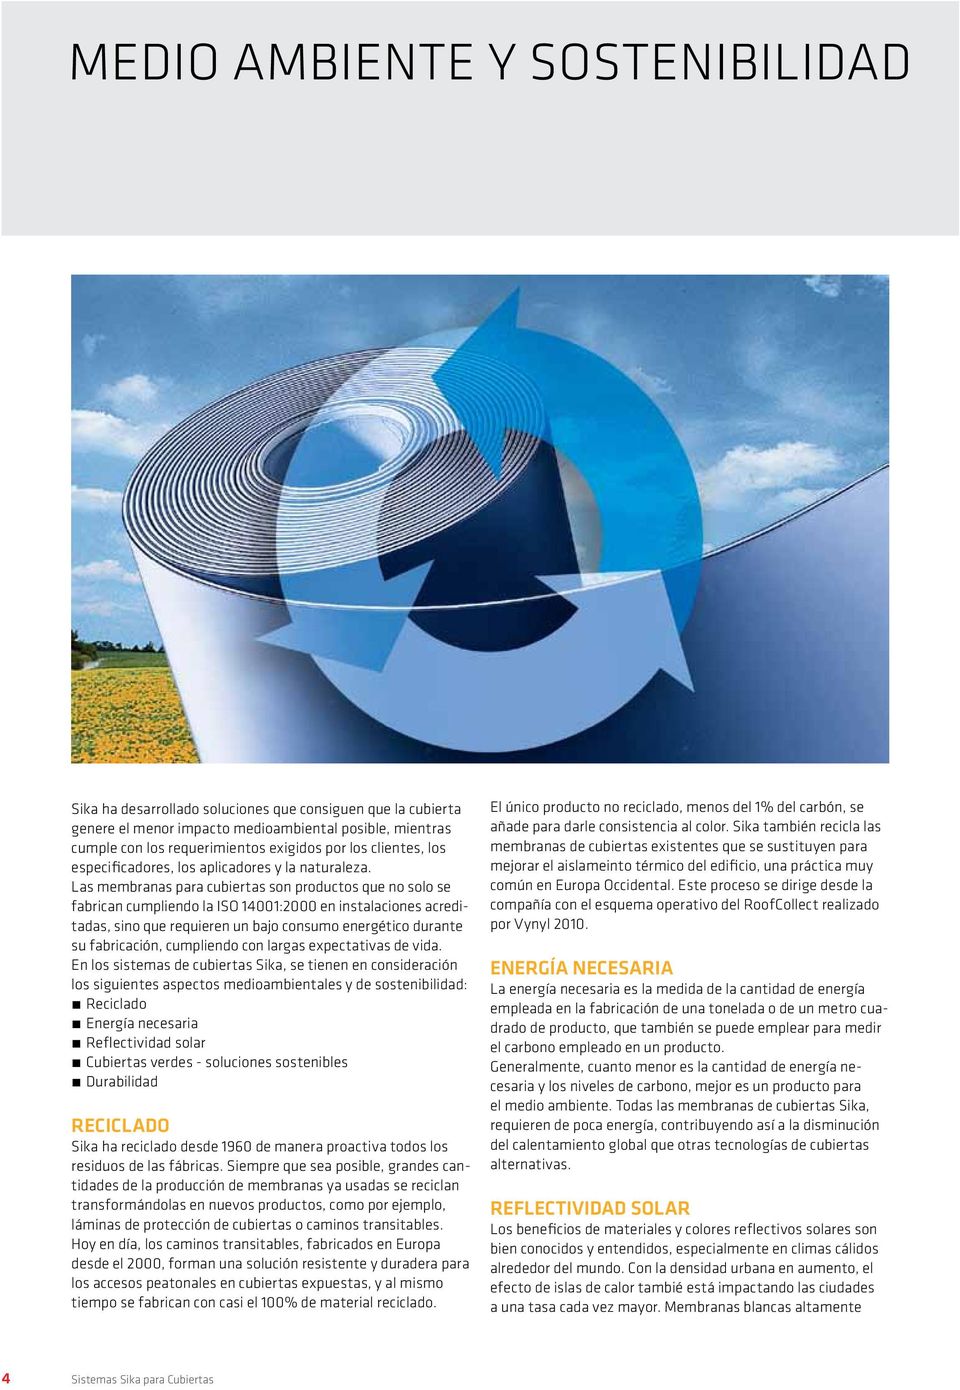 Las membranas para cubiertas son productos que no solo se fabrican cumpliendo la ISO 14001:2000 en instalaciones acreditadas, sino que requieren un bajo consumo energético durante su fabricación,